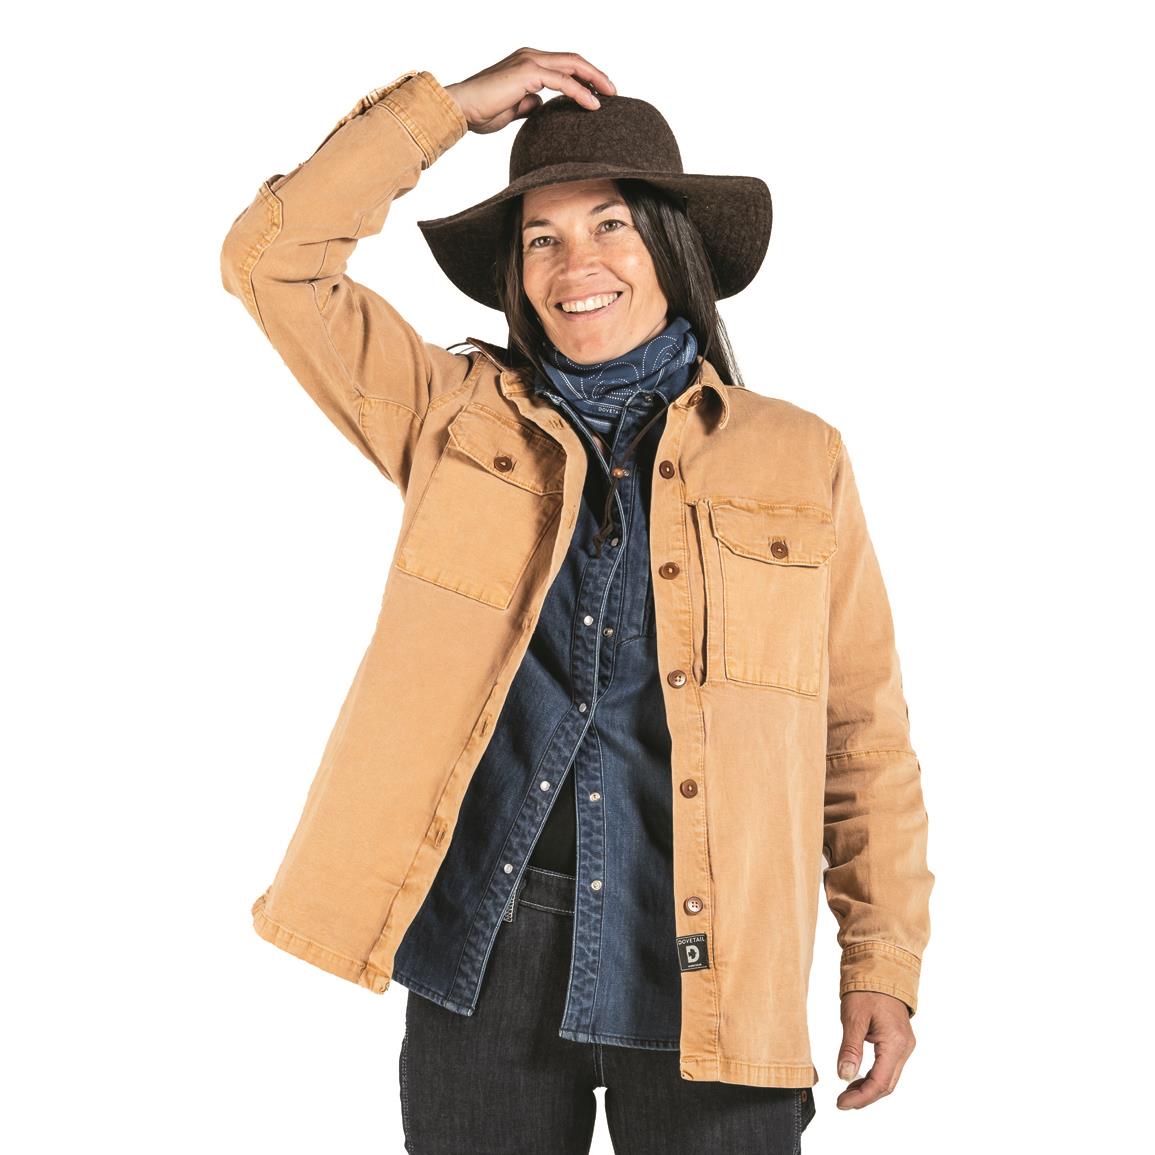 Boulder Gear Women's Cosmic Puffy Jacket - 734864, Jackets, Coats ...